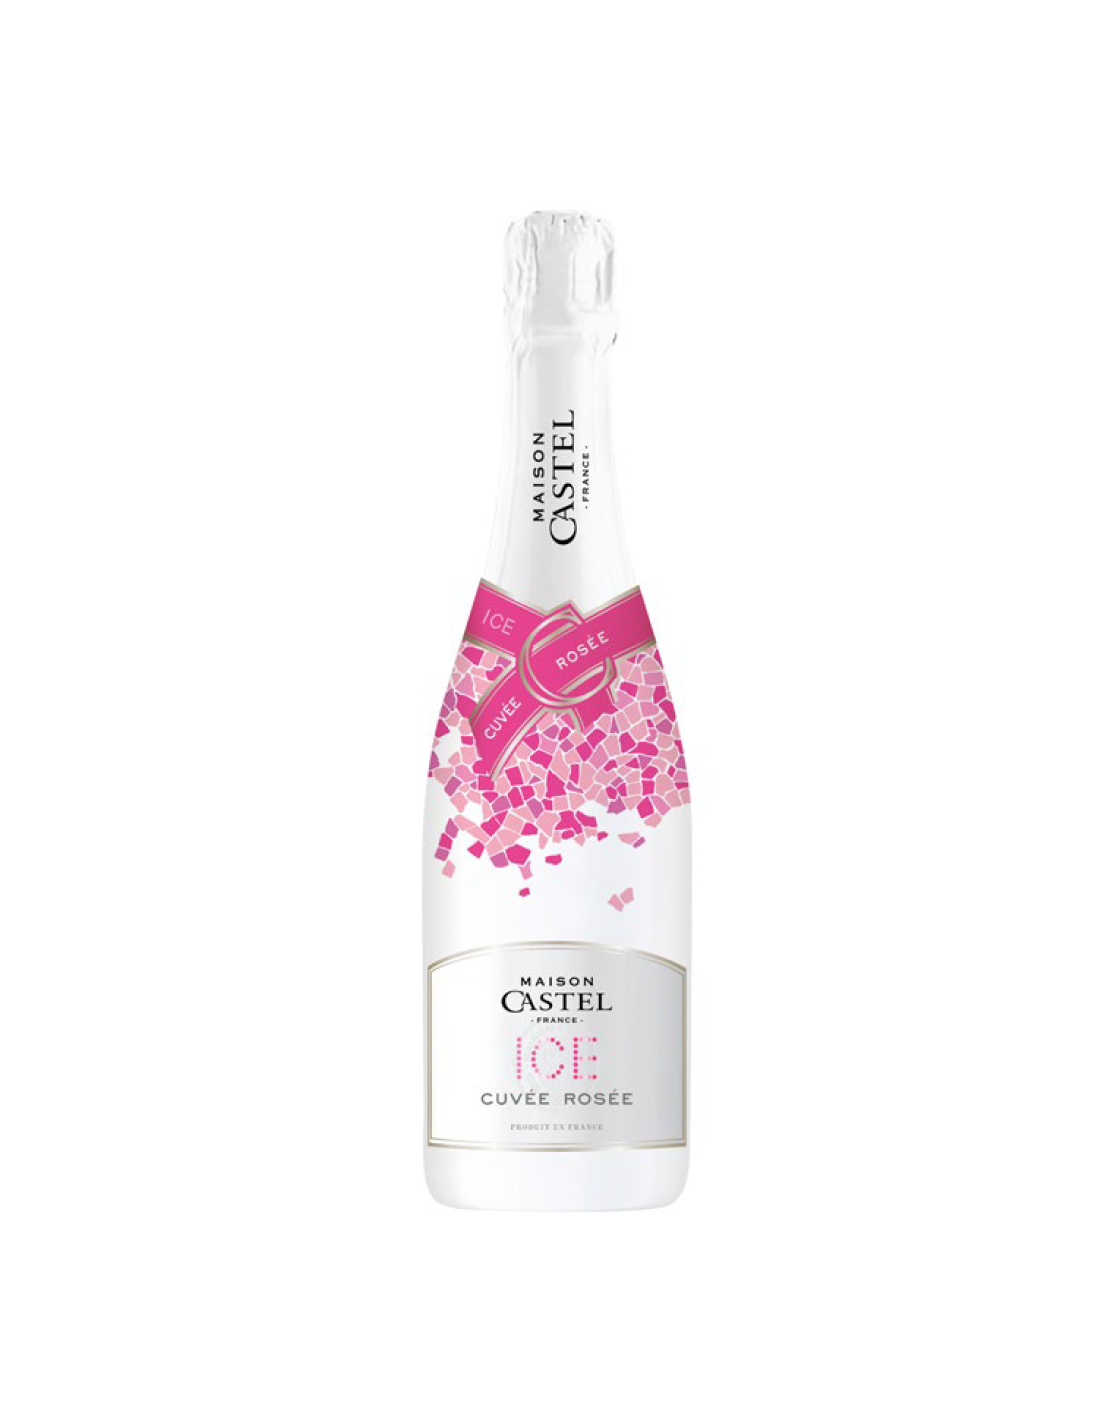 Vin spumant Maison Castel Ice Cuvée Rosée, 0.75L, 11% alc., Franta alcooldiscount.ro